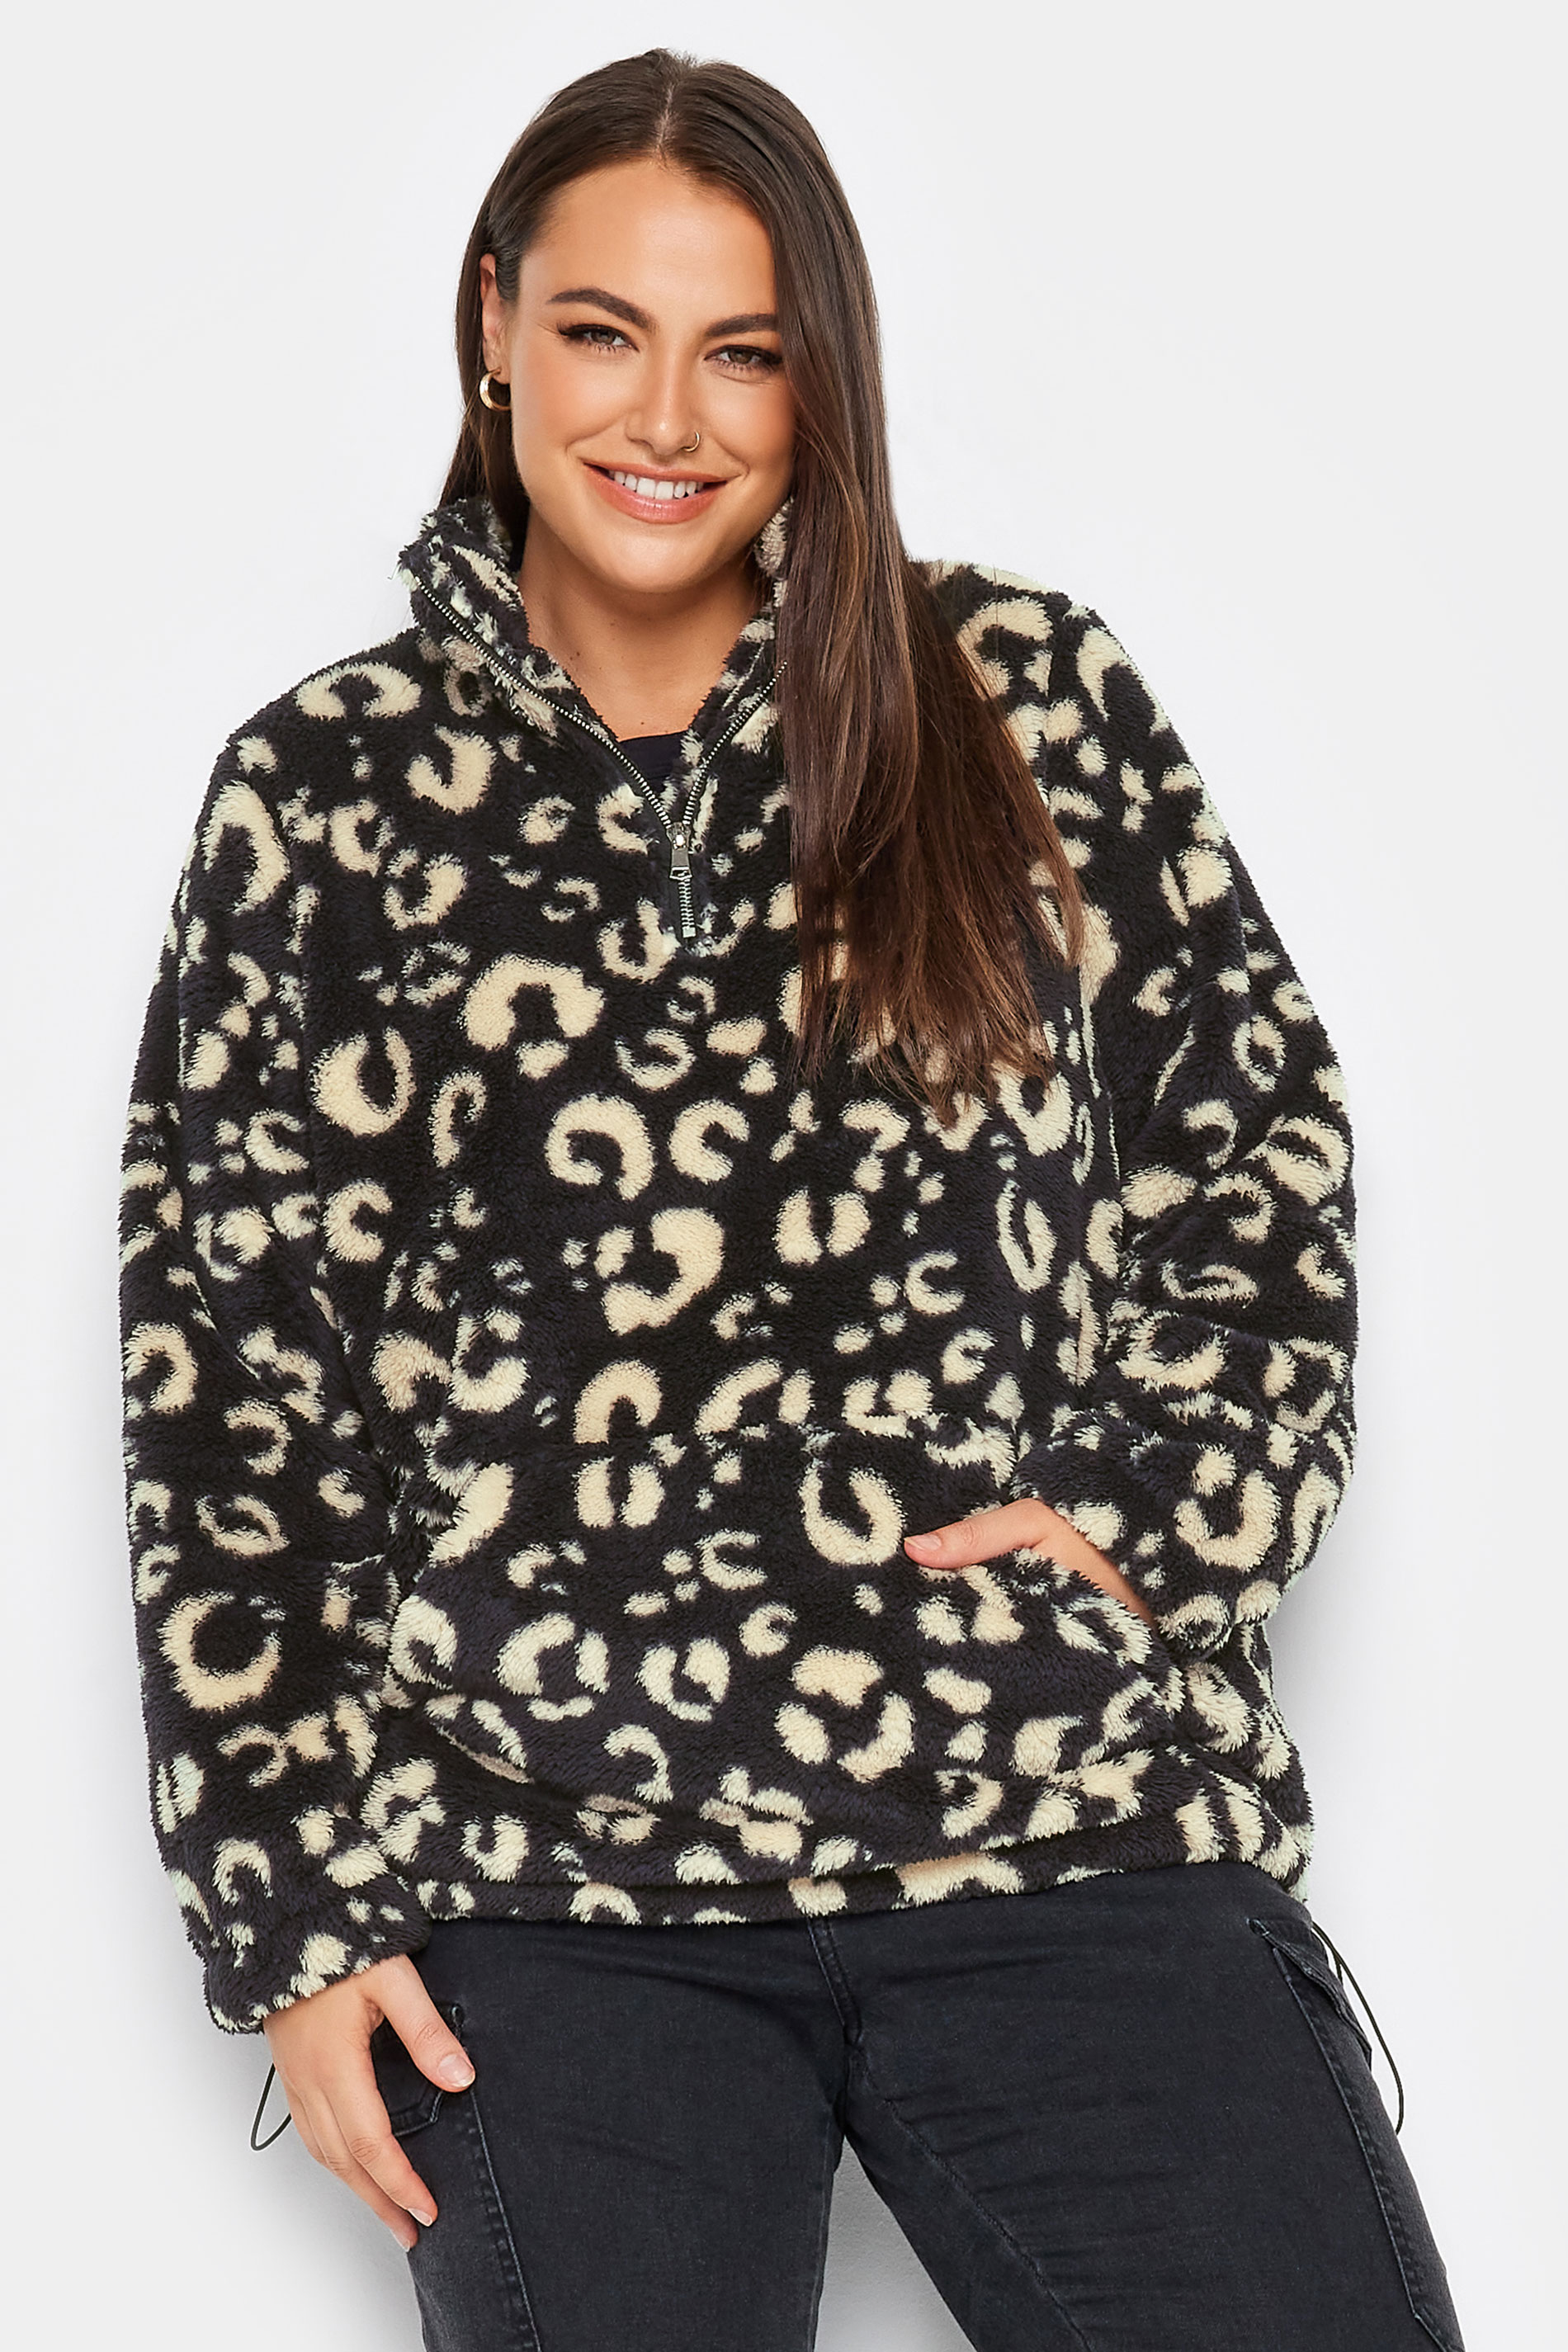 YOURS Plus Size Black Leopard Print Half Zip Fleece Sweatshirt | Yours Clothing 2